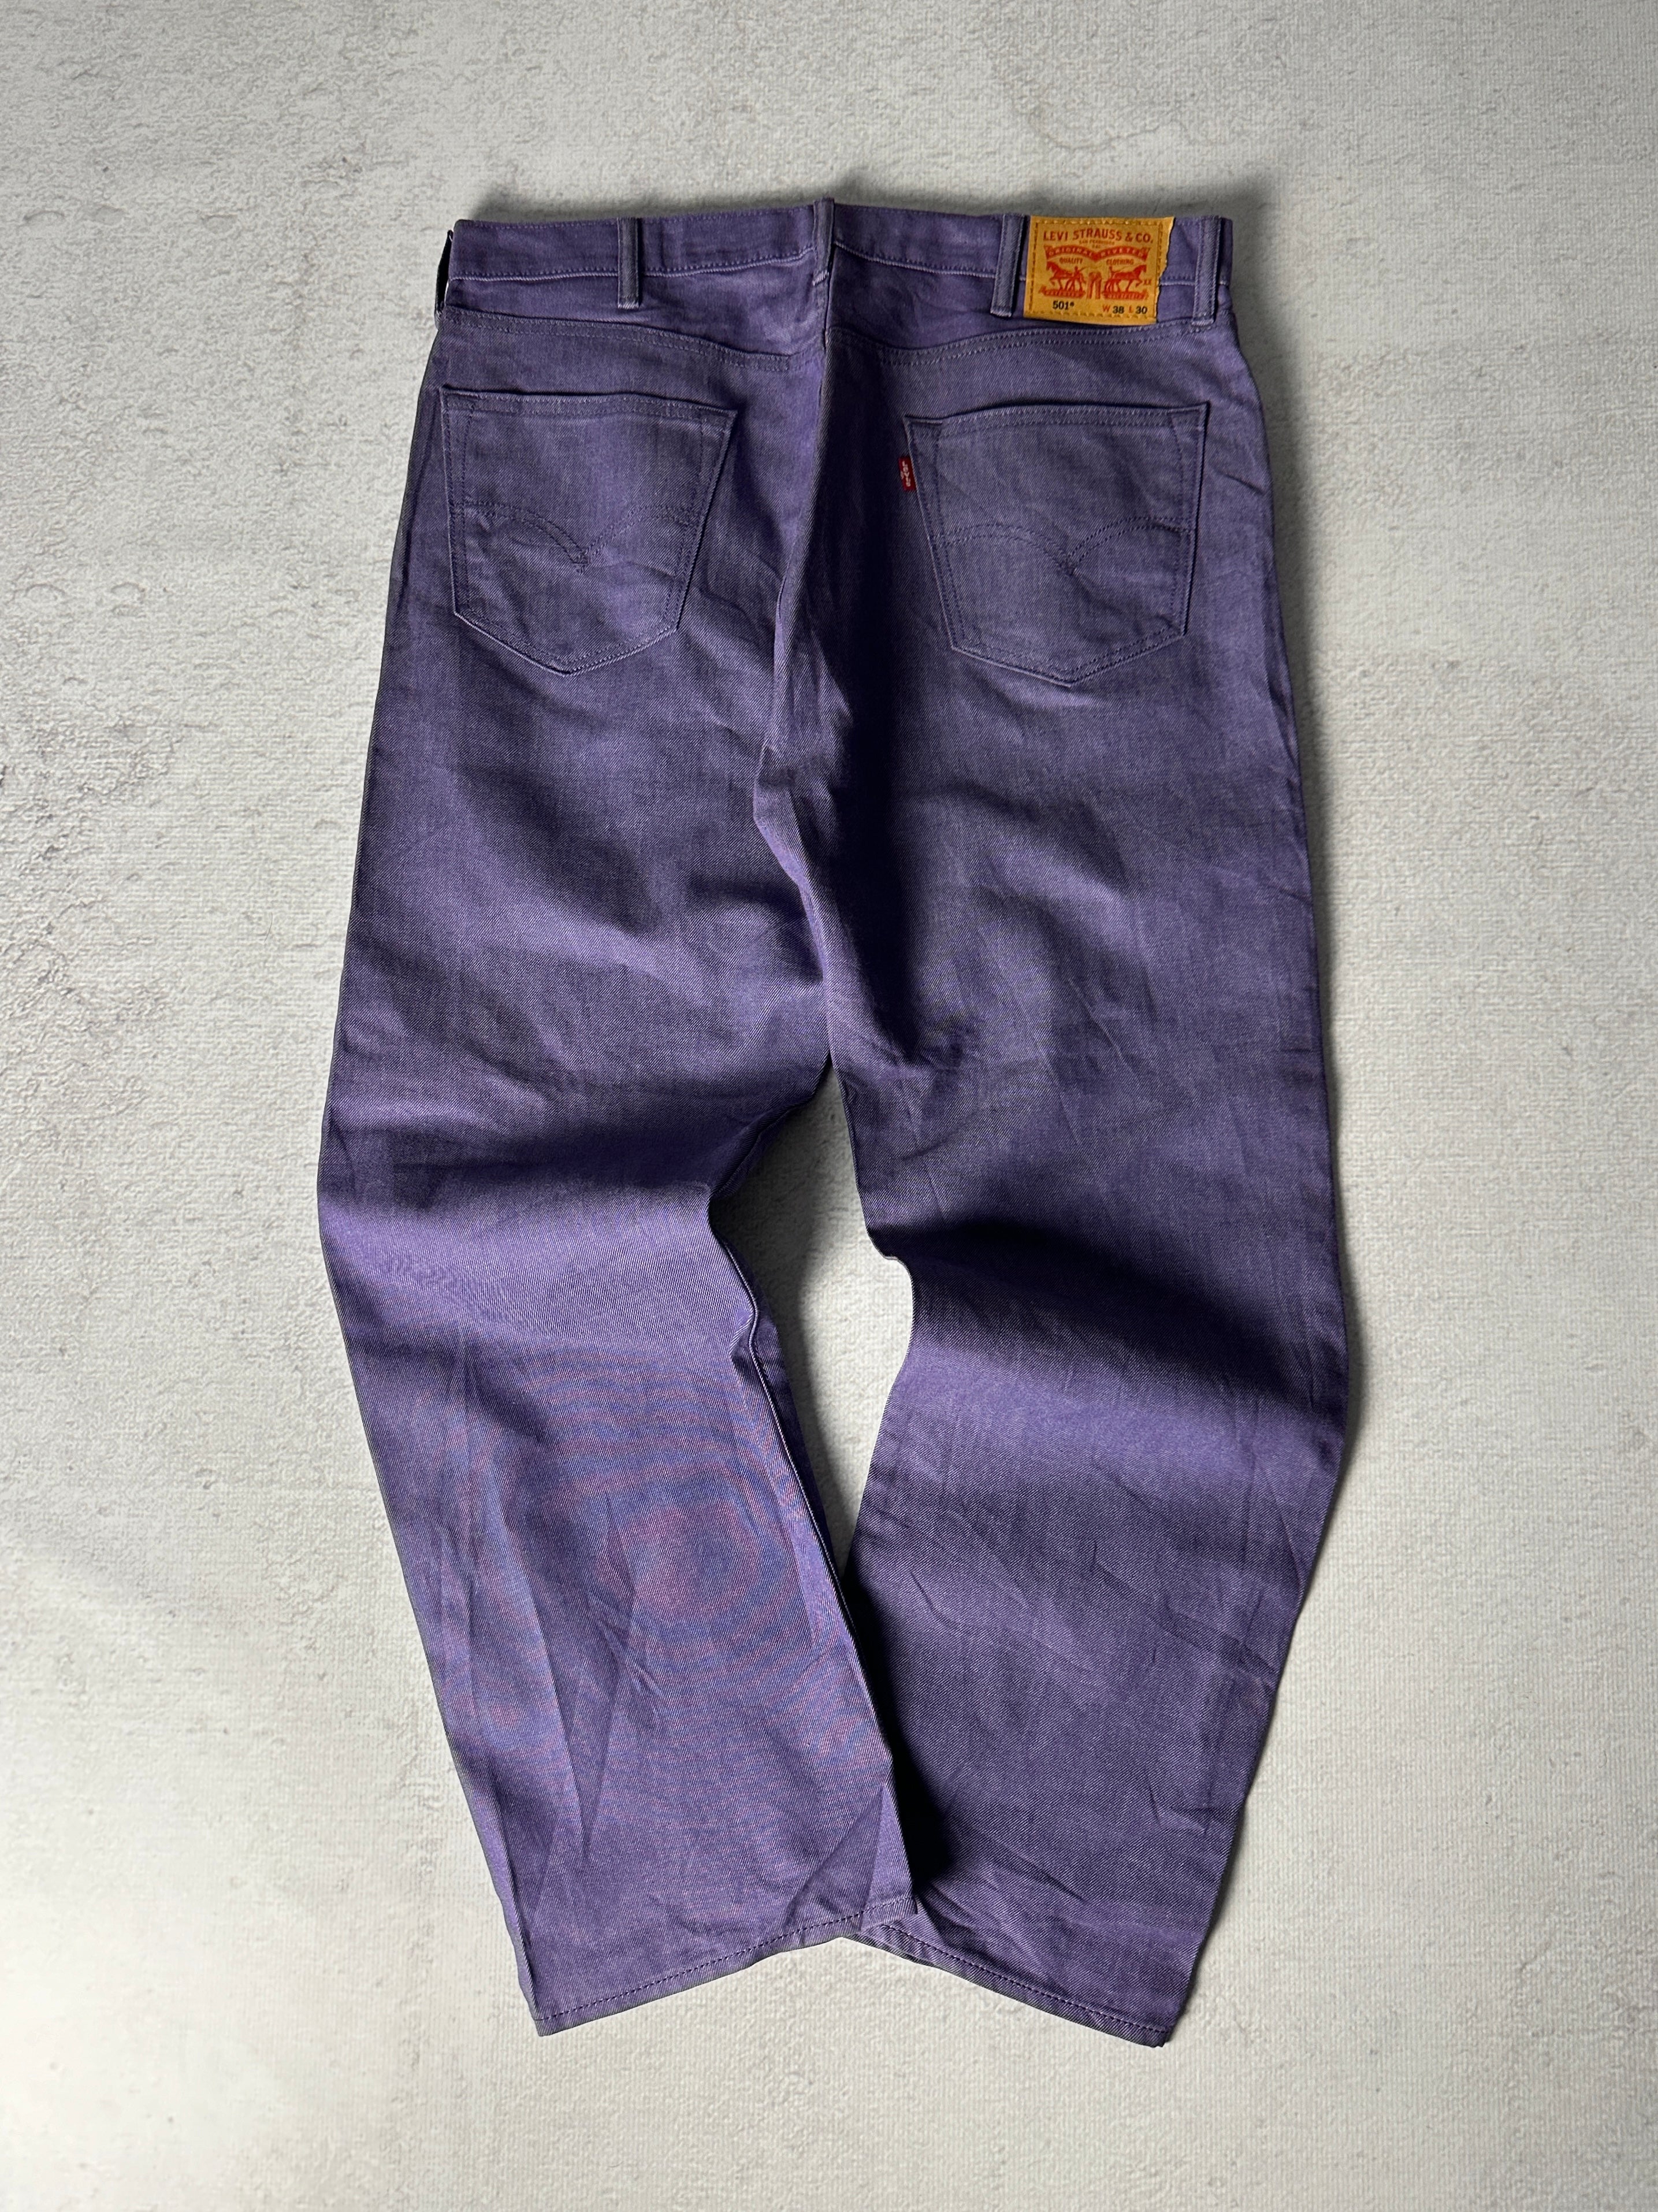 Vintage Levis 501 Jeans - Men's 38W30L